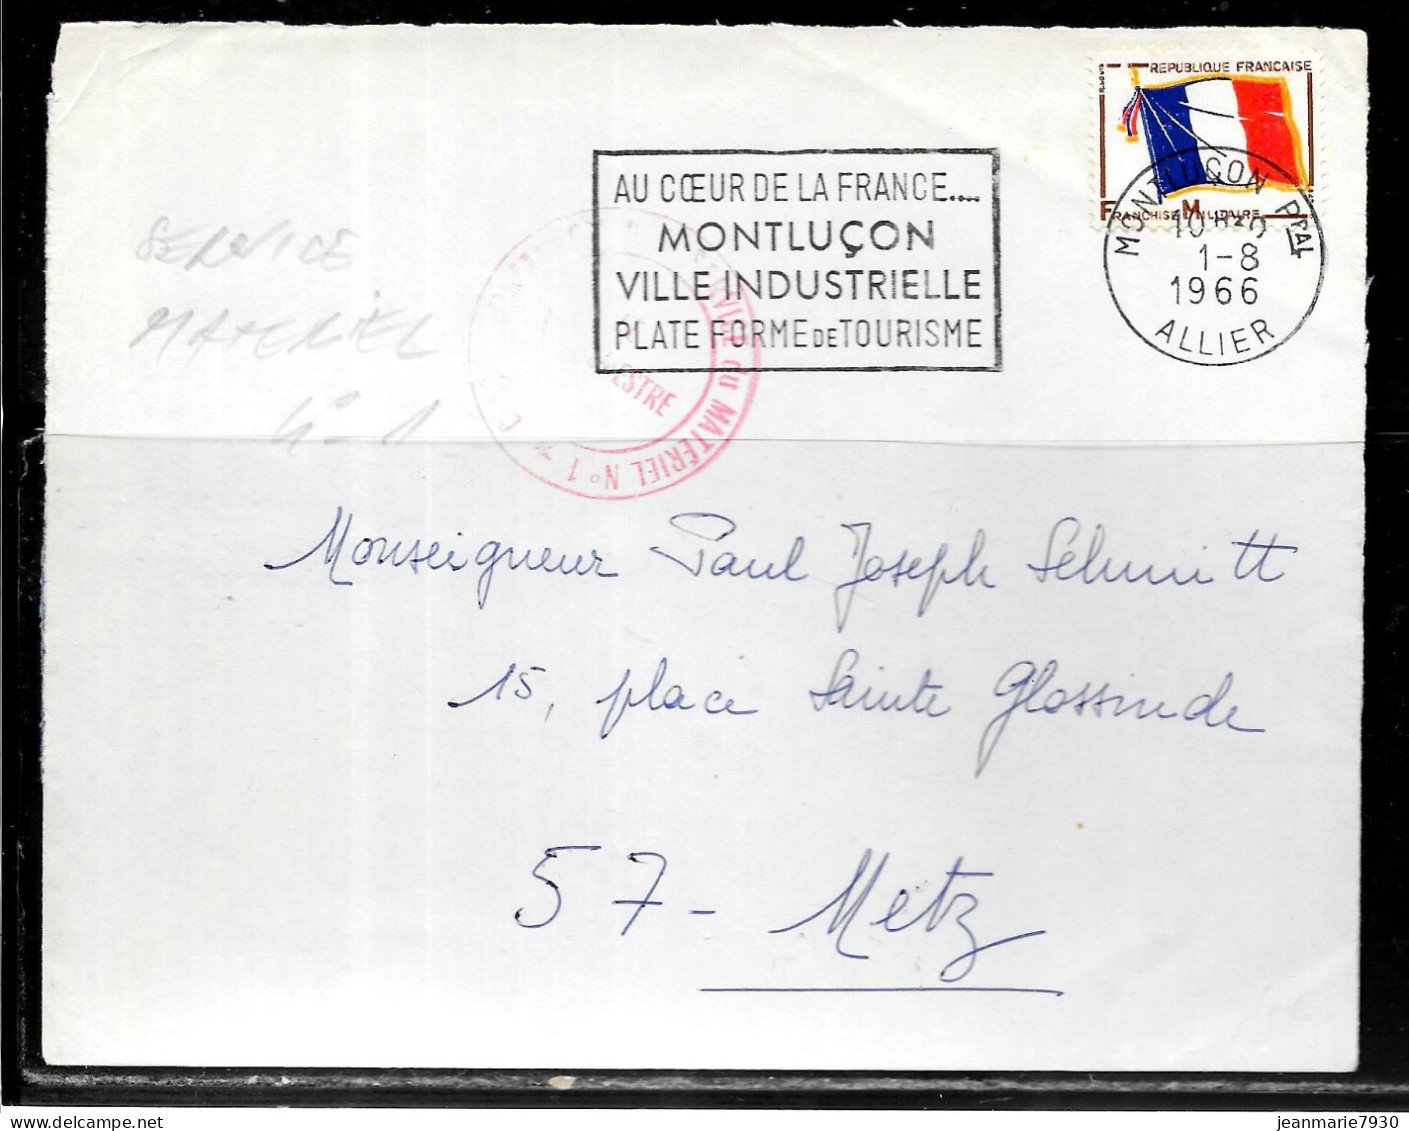 P258 - LETTRE EN FRANCHISE DE MONTLUCON DU 01/08/66 - CACHET SERVICE MATERIEL N° 1 - FLAMME - Lettres & Documents